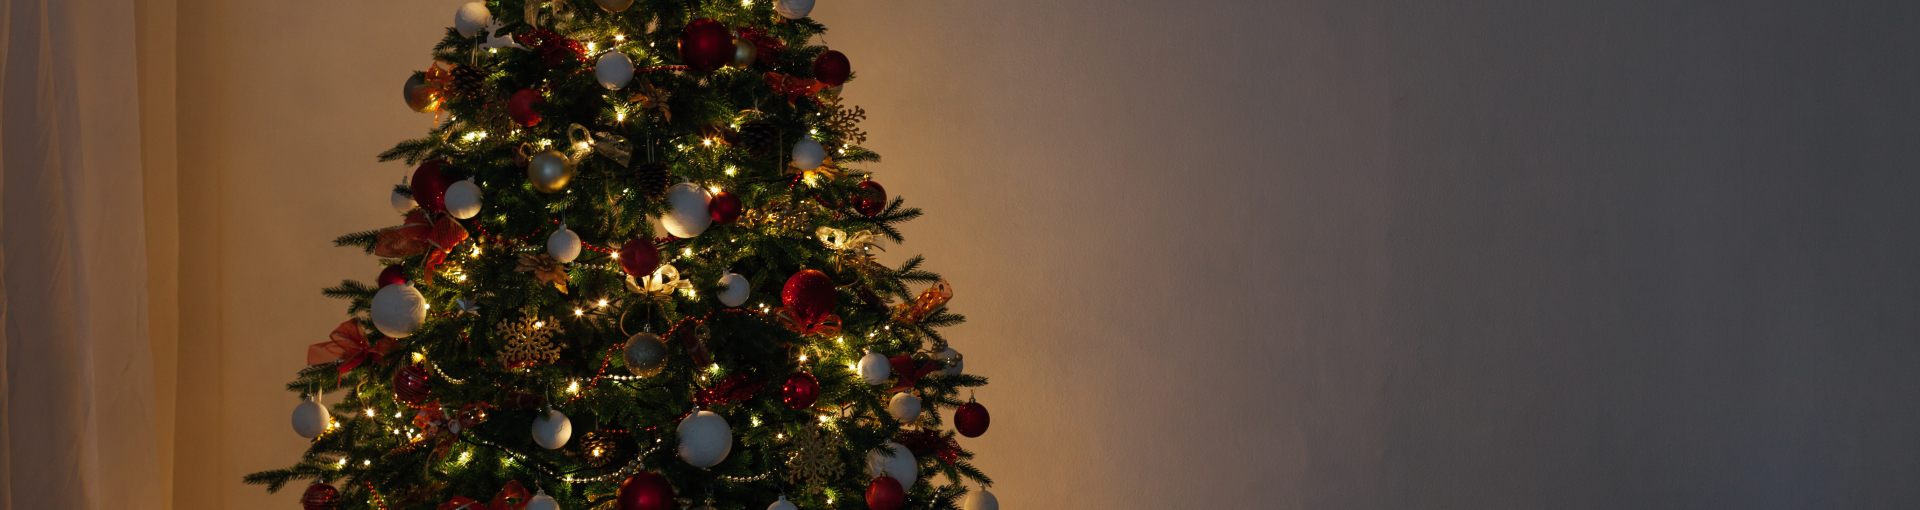 Elektrisches Licht am Weihnachtsbaum